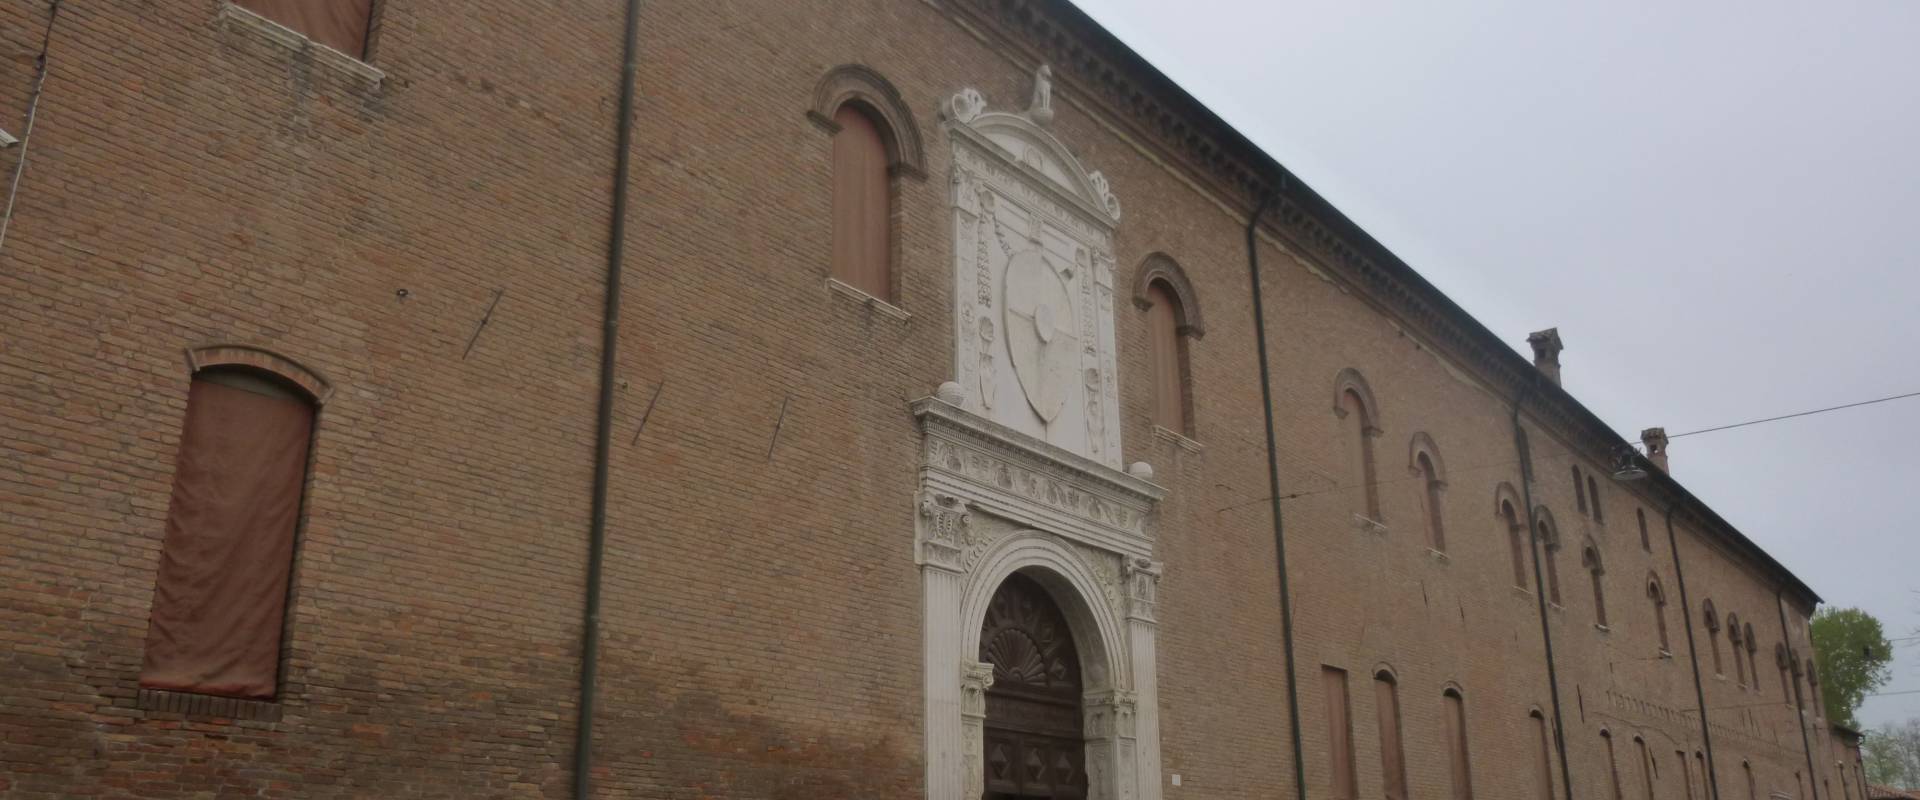 Palazzo Schifanoia - Ferrara 3 foto di Diego Baglieri